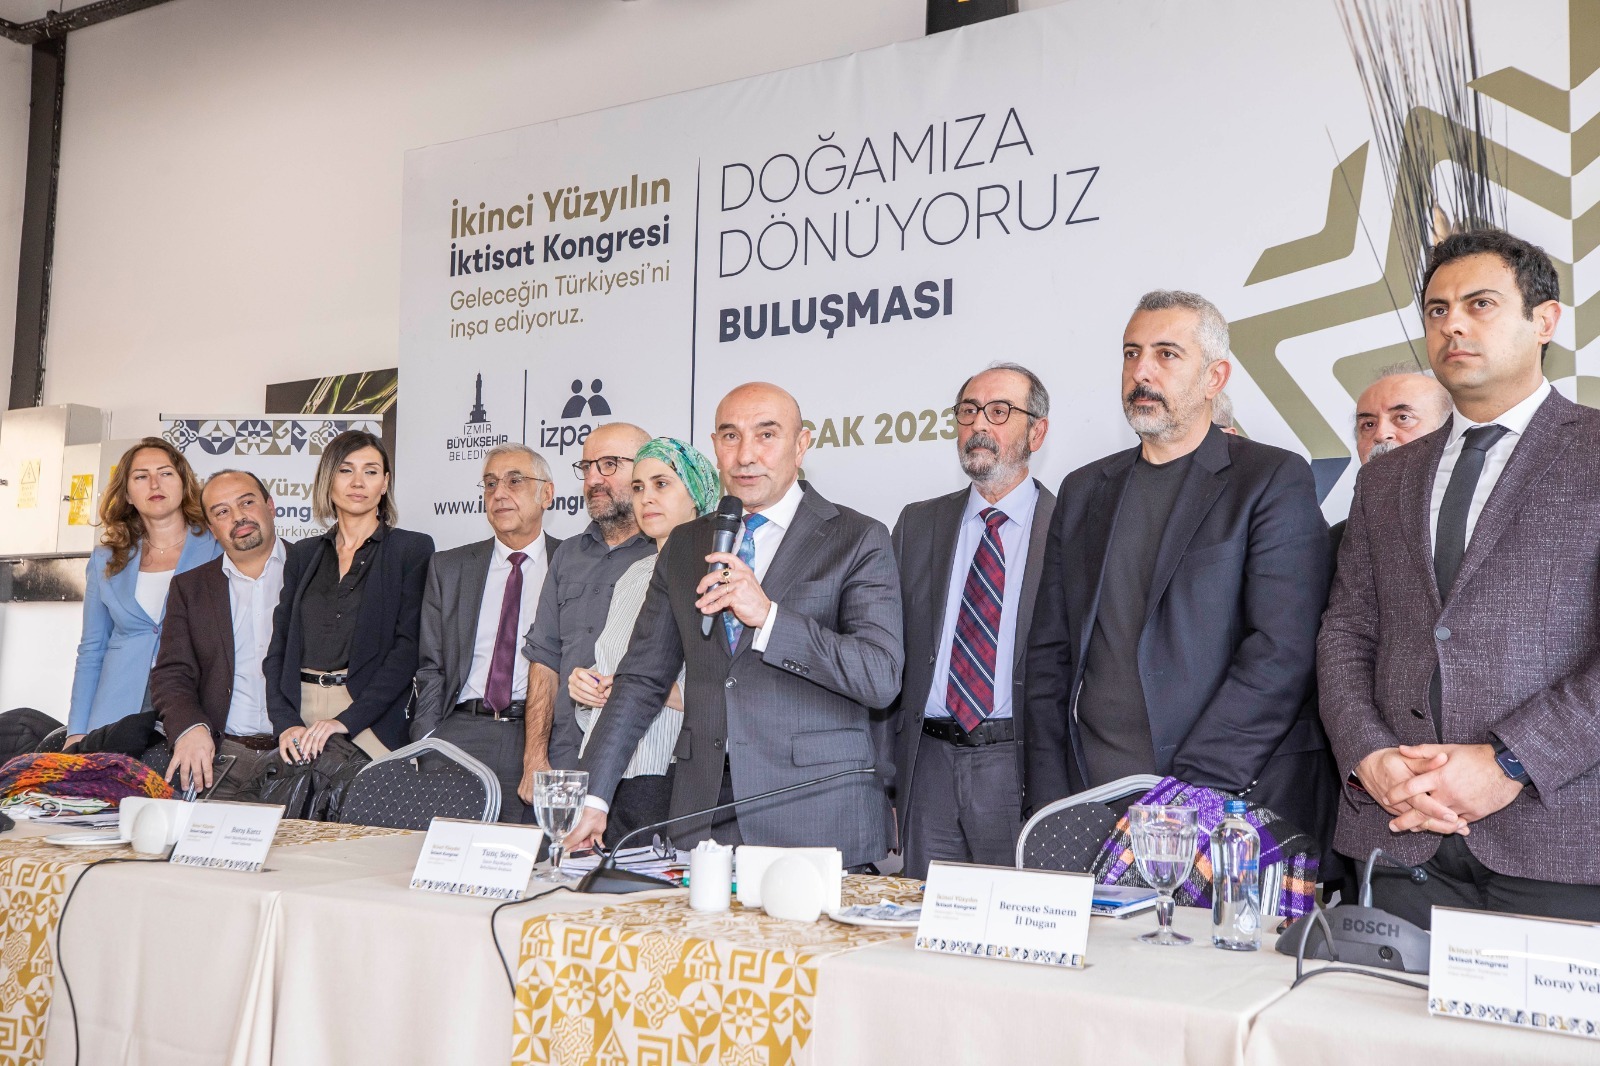 İzmir Büyükşehir Belediyesi’nin düzenleyeceği İkinci Yüzyılın İktisat Kongresi hazırlıkları sürüyor.